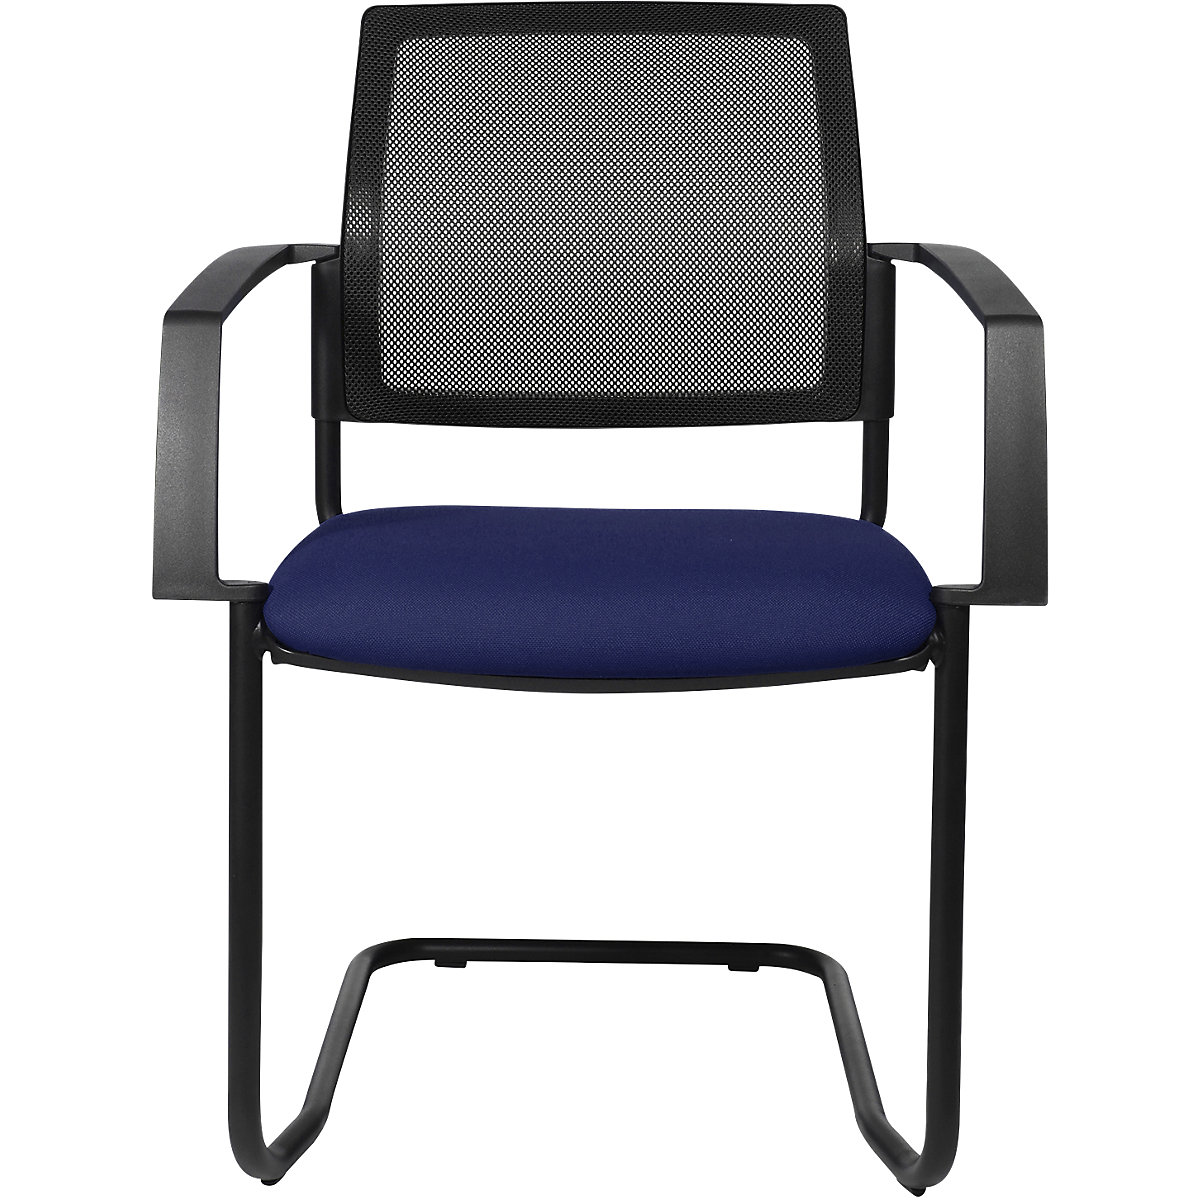 Složiva stolica s mrežastim naslonom – Topstar, konzolna stolica, pak. 2 kom., sjedalo u plavoj boji, postolje u crnoj boji